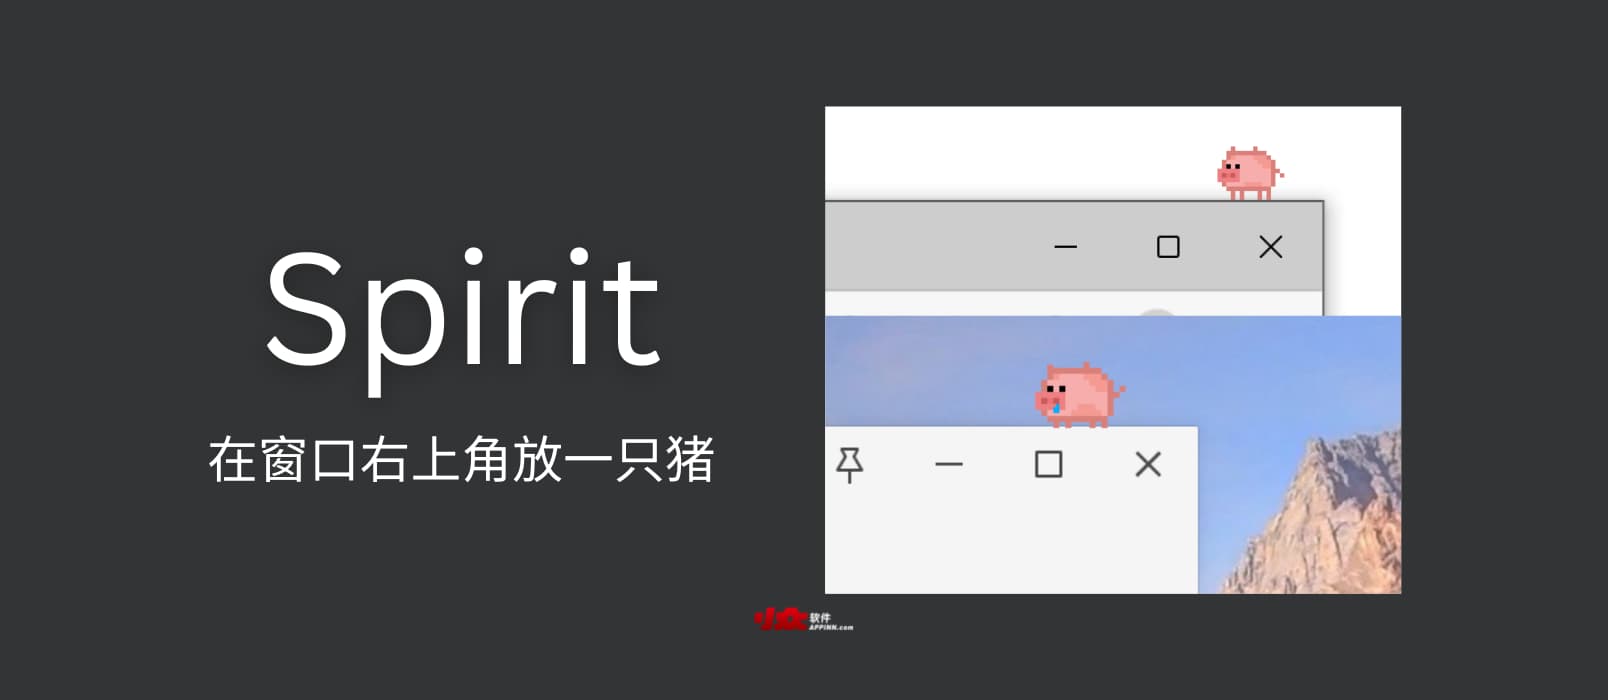 Spirit - 一只放在窗口右上角的猪[Windows] 1